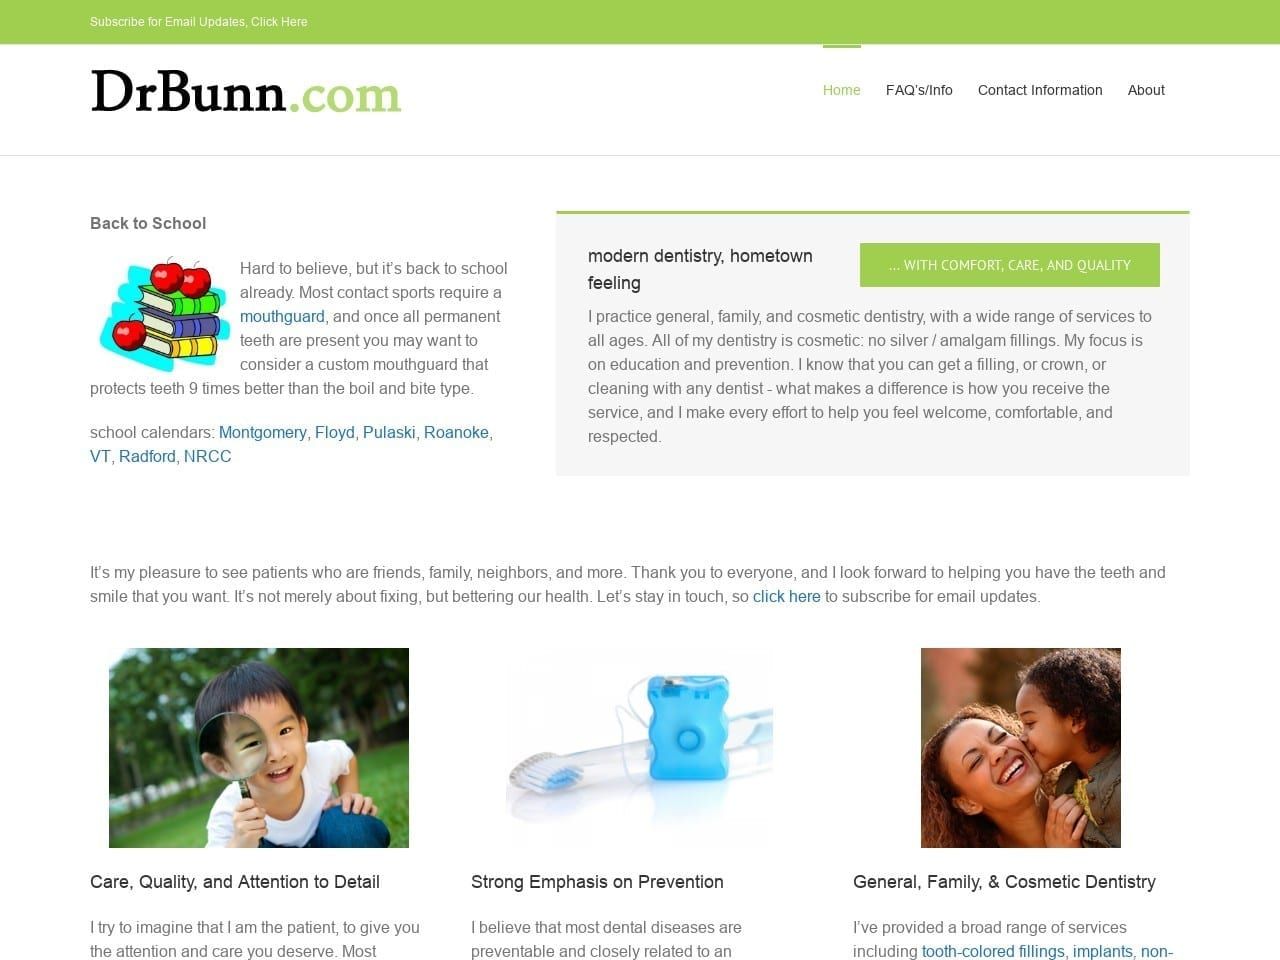 Steven T. Bunn DDS Website Screenshot from drbunn.com